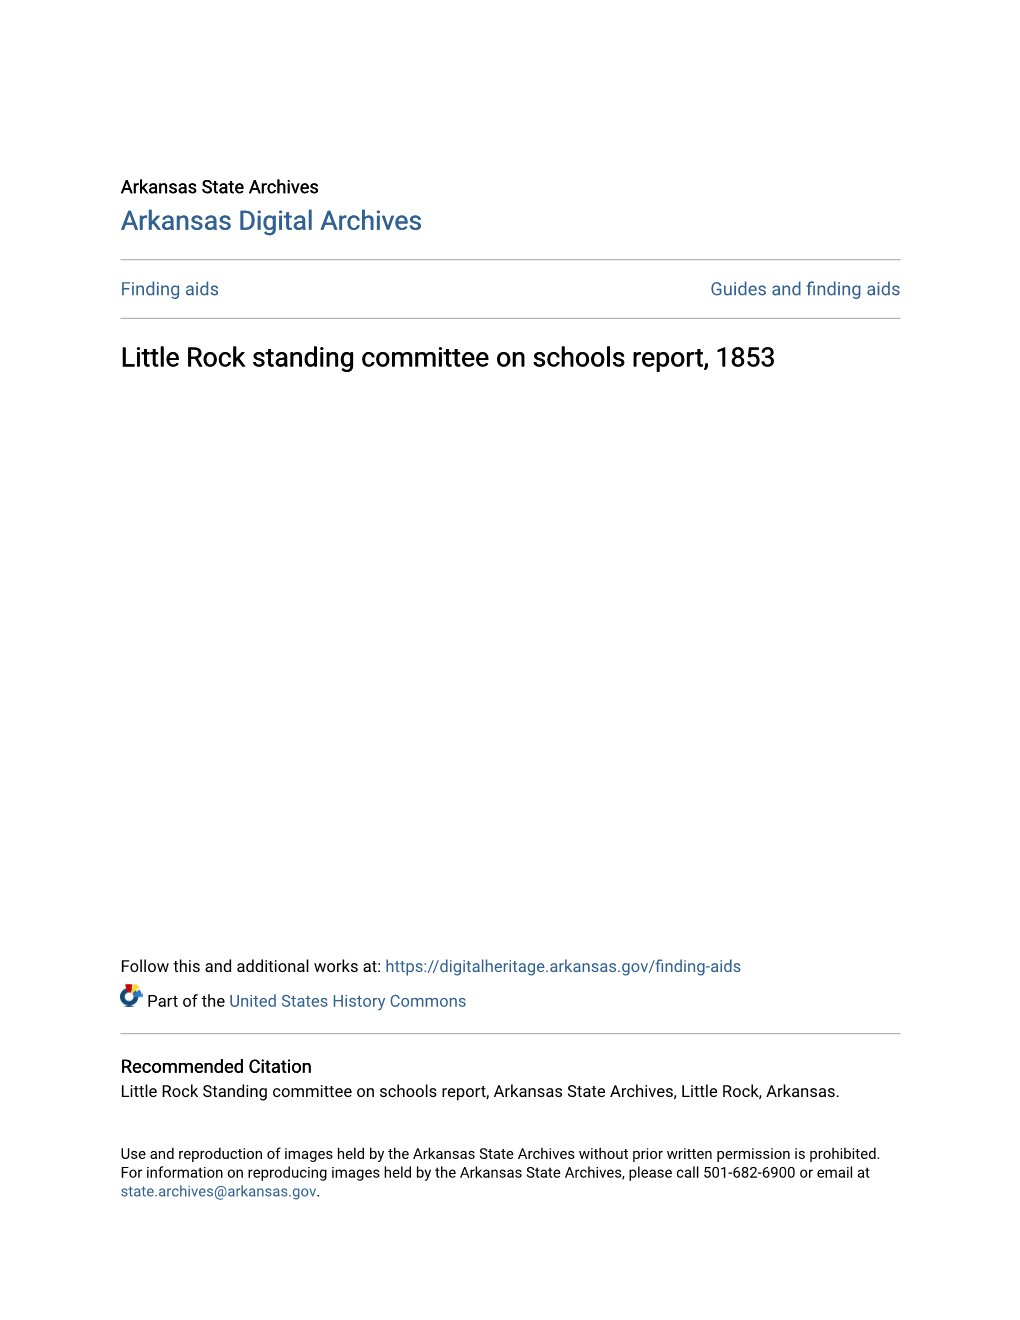 Little Rock Standing Committee on Schools Report, 1853